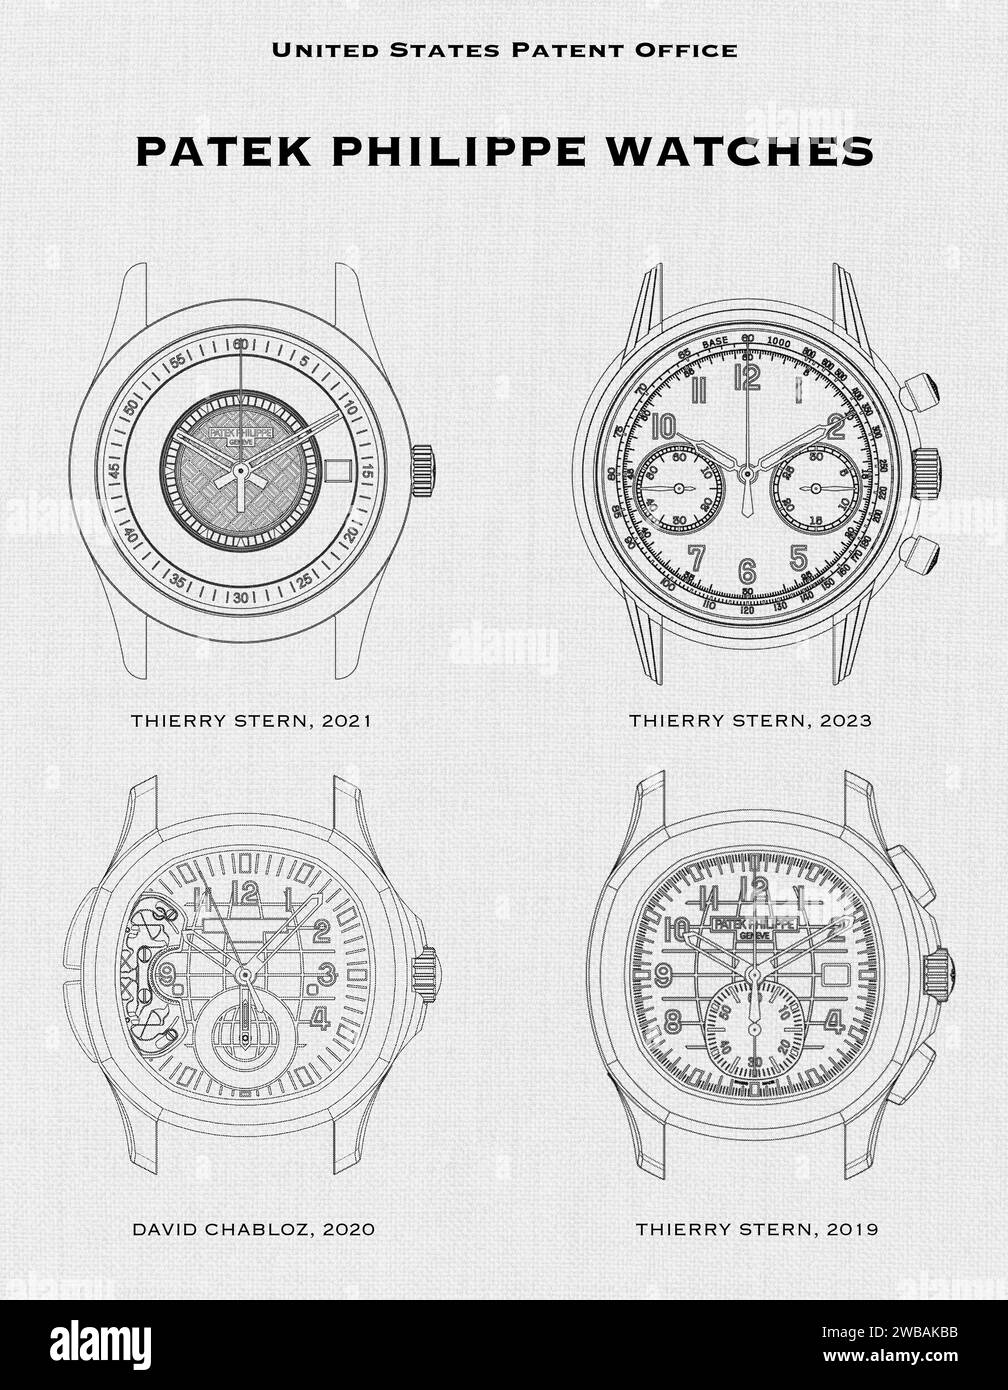 US-Patentamt Designs von Uhrenscheiben für Patek Philippe Uhren auf weißem Hintergrund Stockfoto